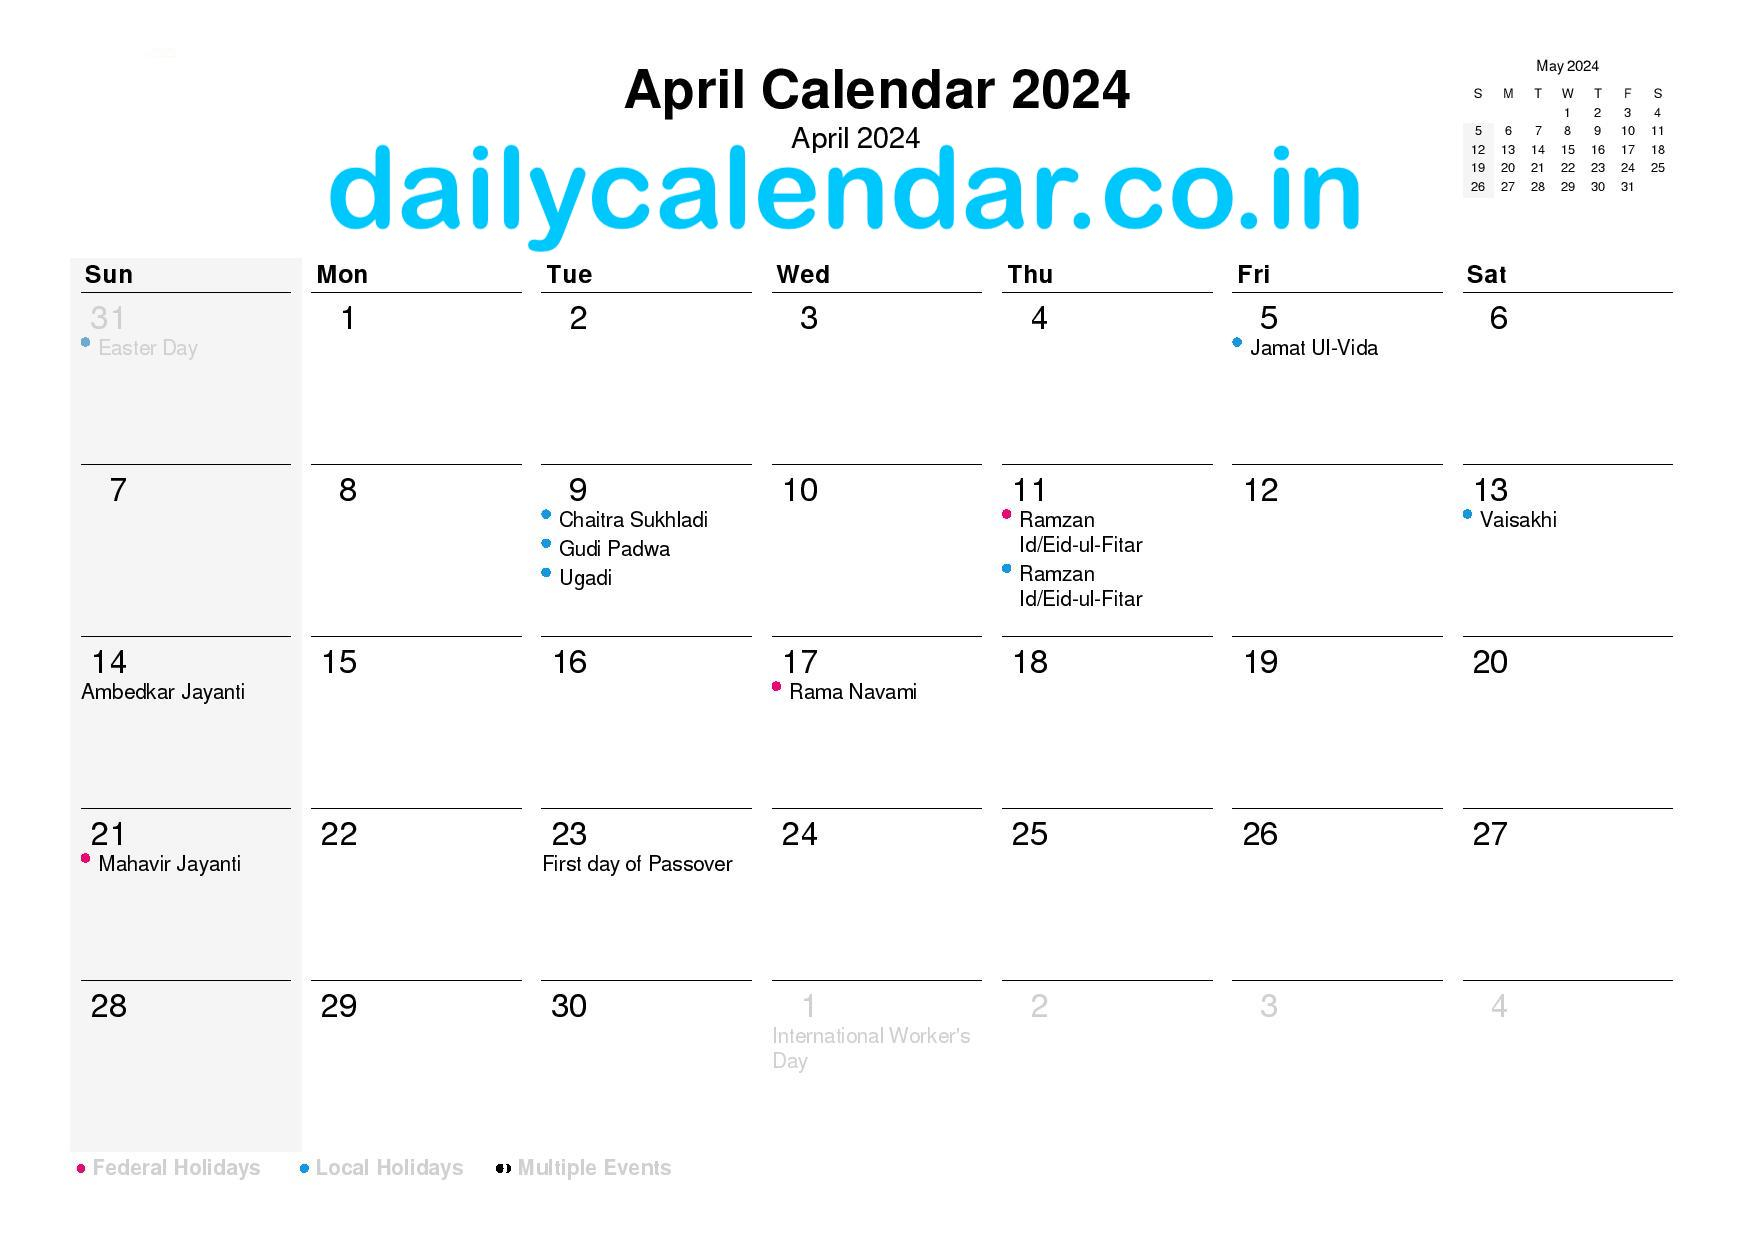 April 2024 Calendar With Holidays India [Hindu Calendar] Pdf within April 2024 Calendar Holidays